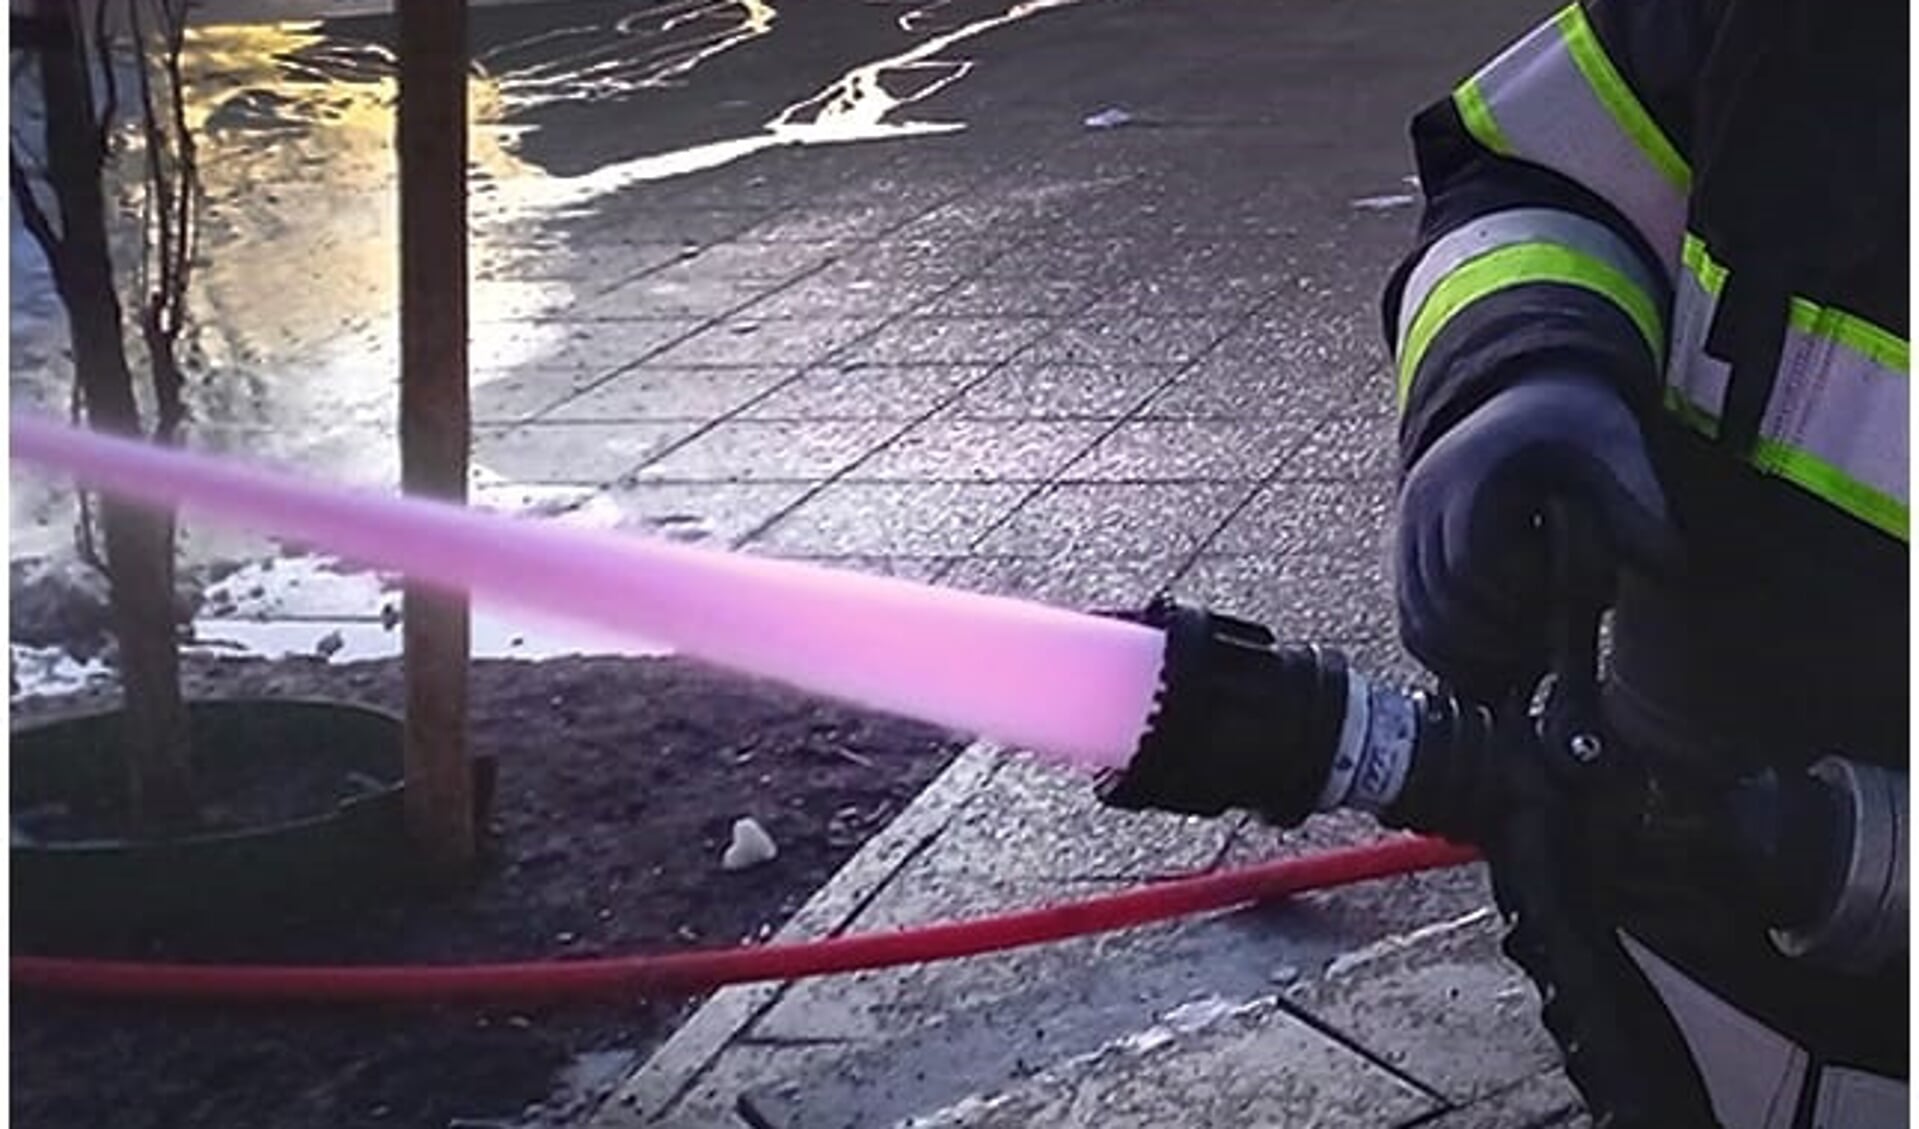 Via roze water kan de brandweer beter kijken wat het effect van het blussen is geweest.  